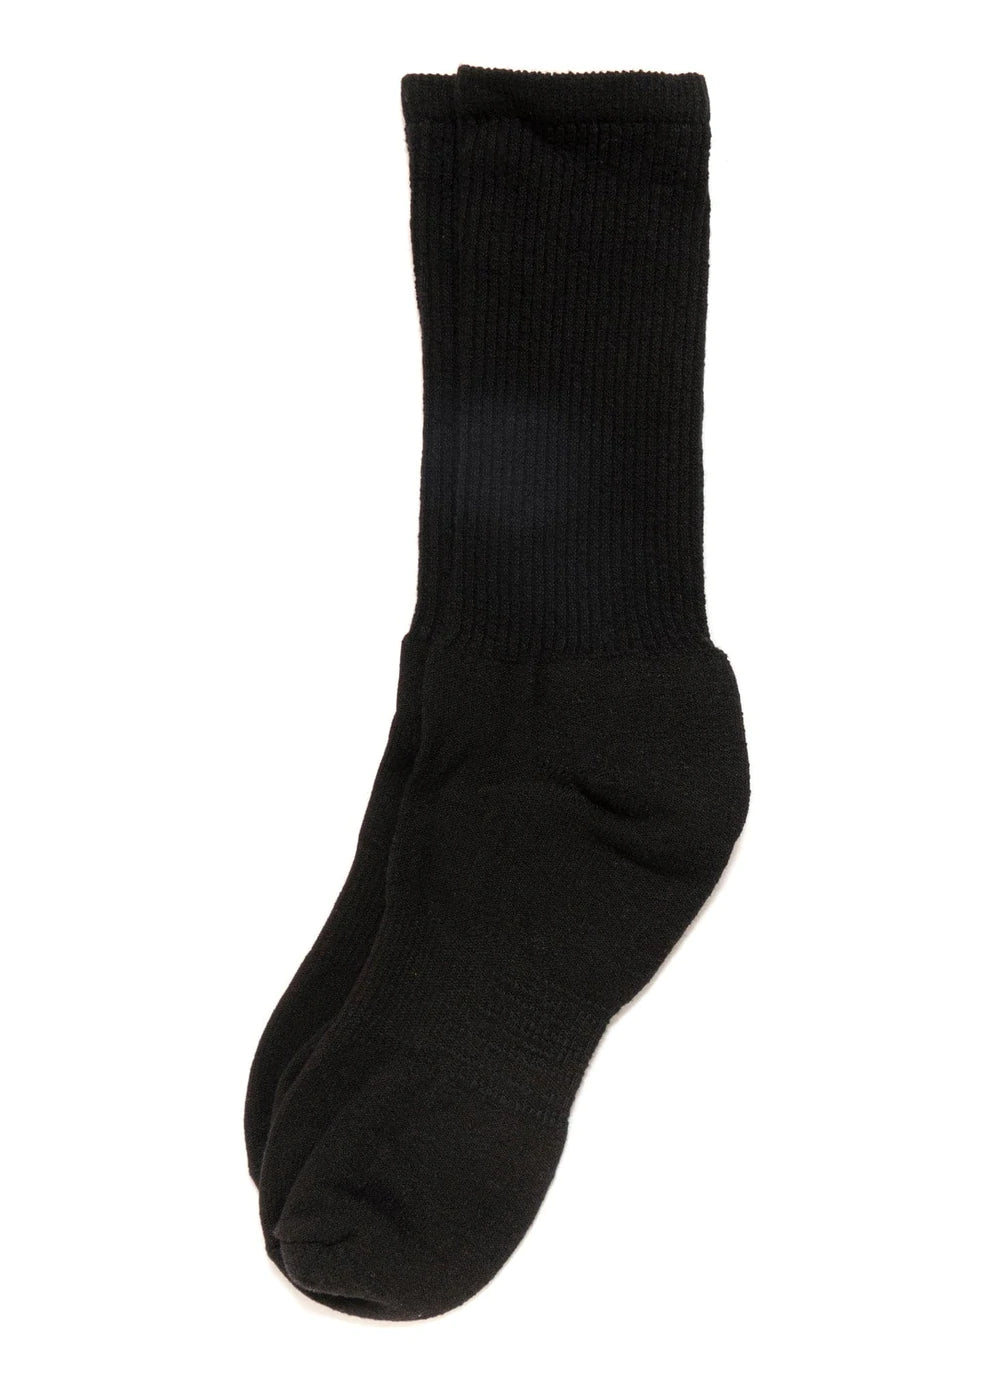 American Trench Mil-Spec Sport Socks Unisex Men's Women's